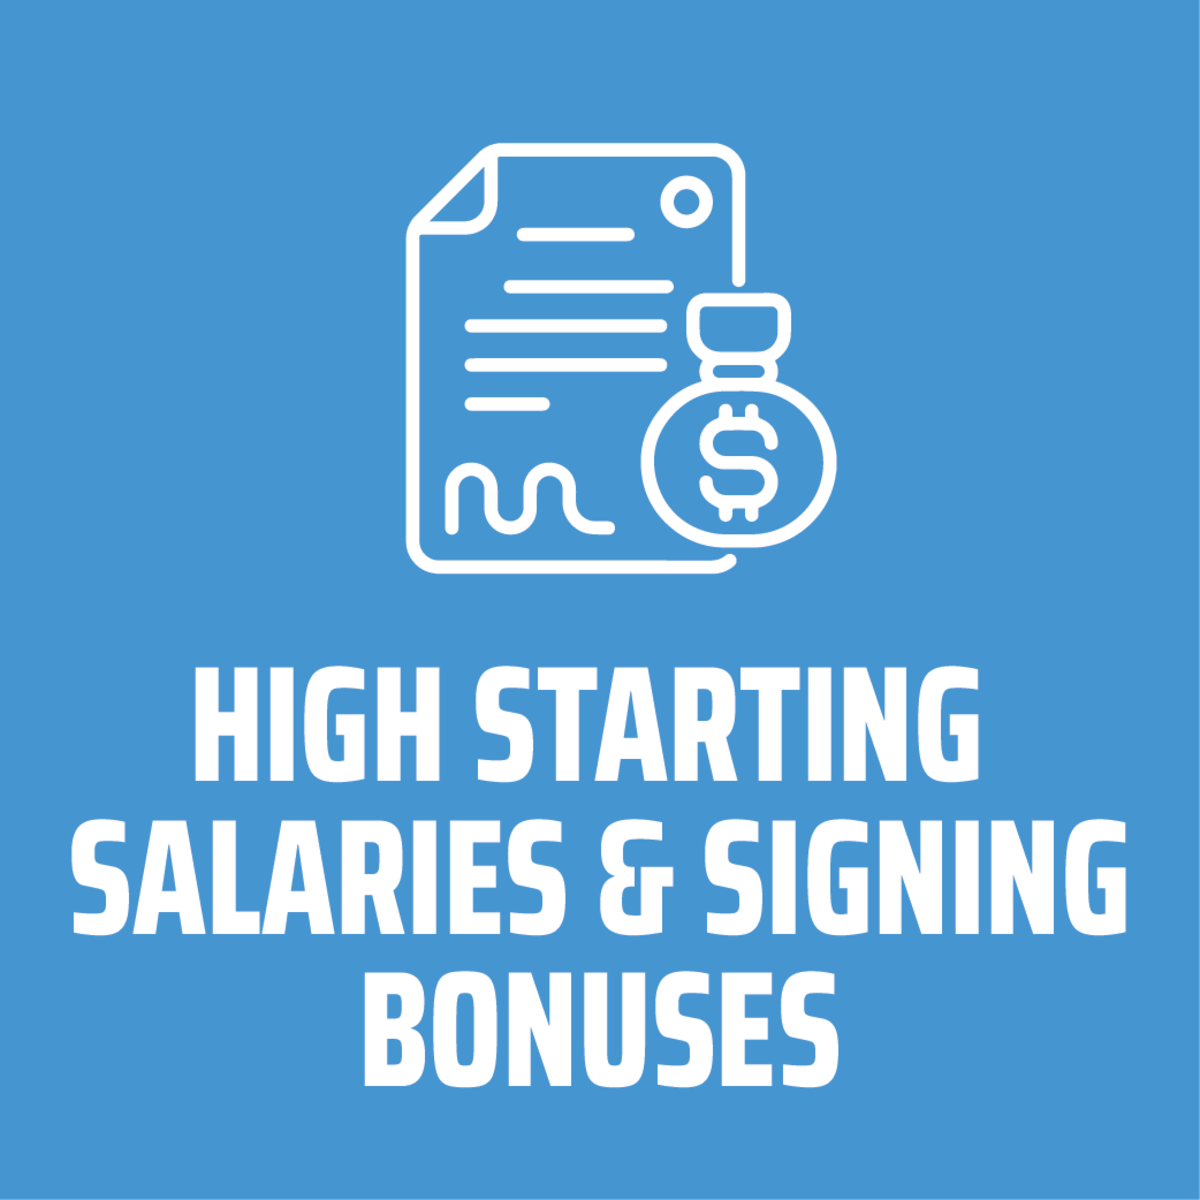 High starting salaries